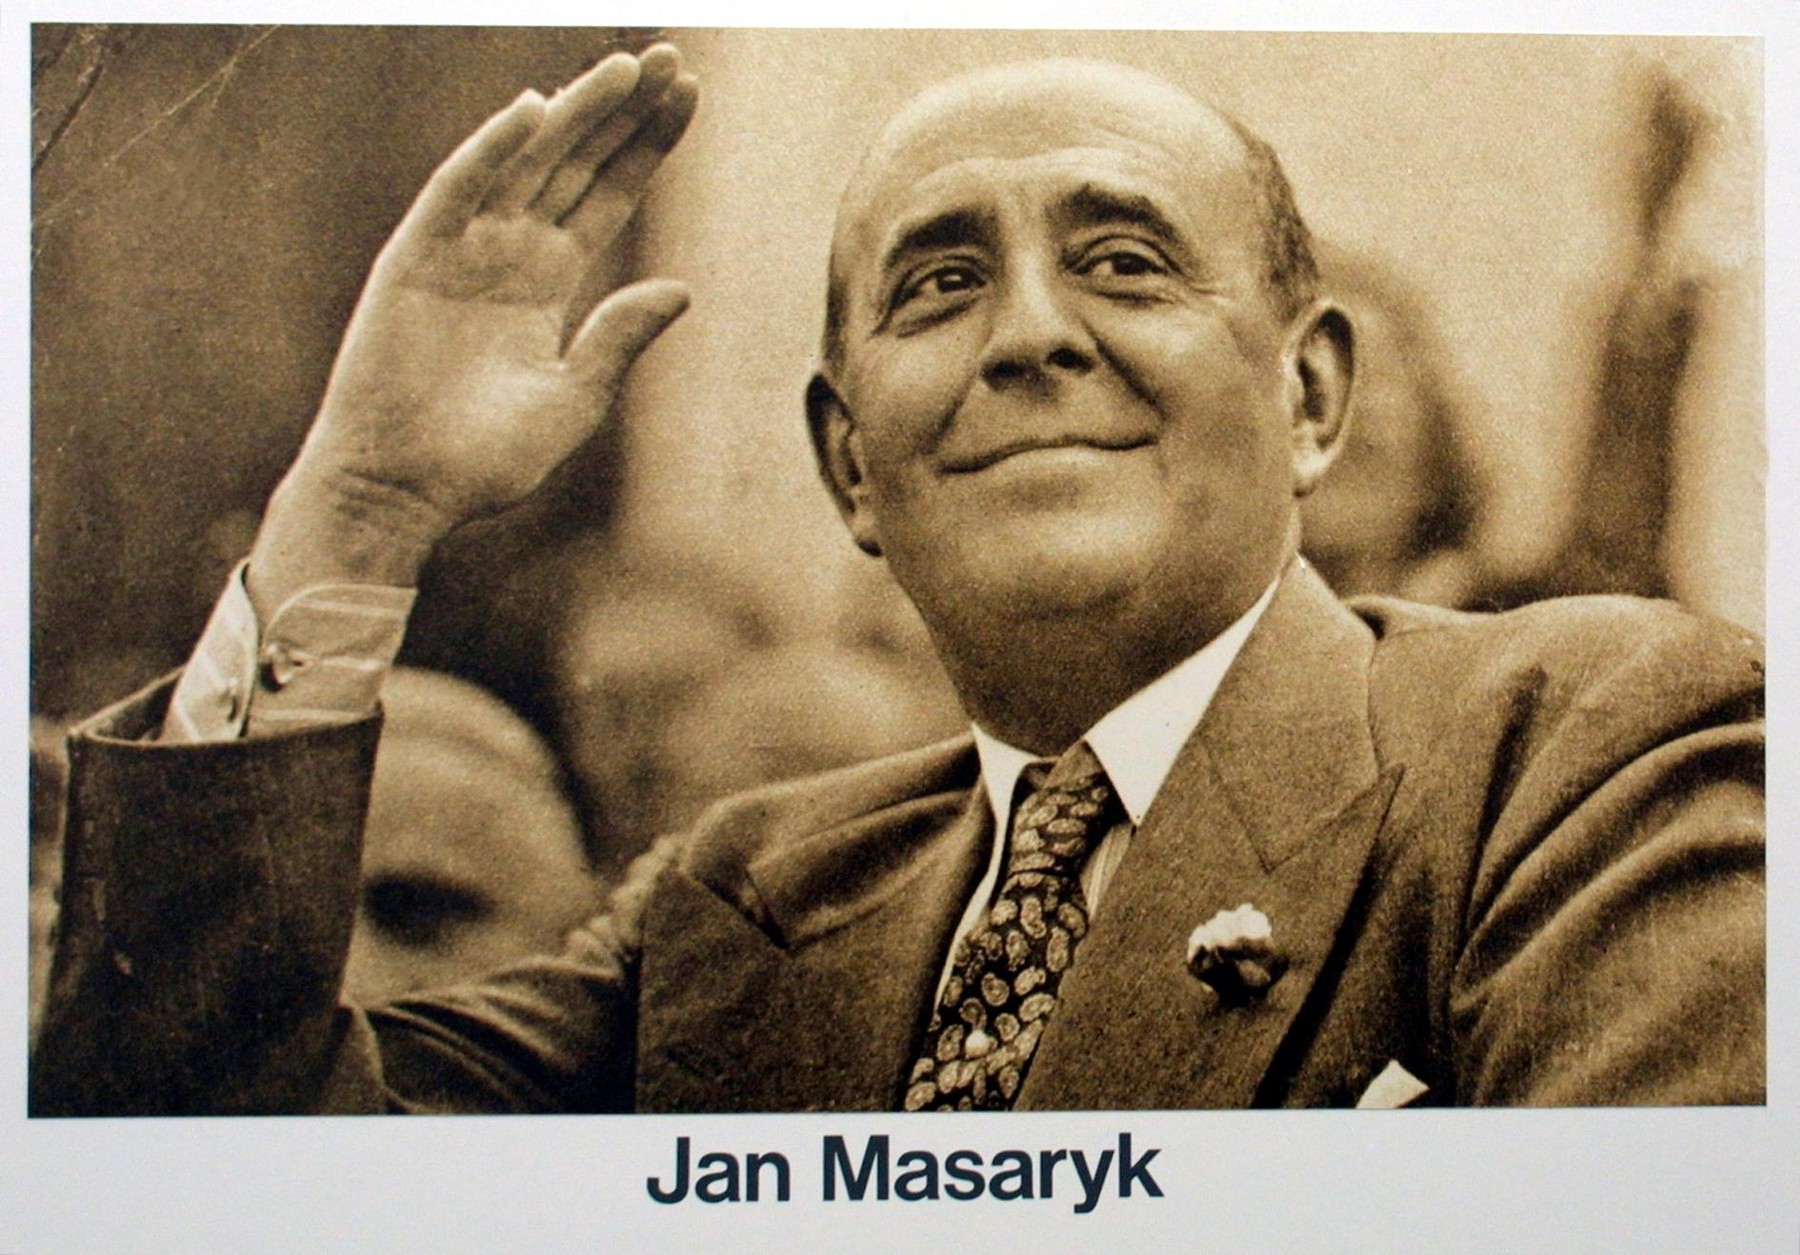 První poválečný ministr zahraničí Jan Masaryk zemřel v noci z 9. na 10. března 1948 po pádu z okna svého služebního bytu v Černínském paláci